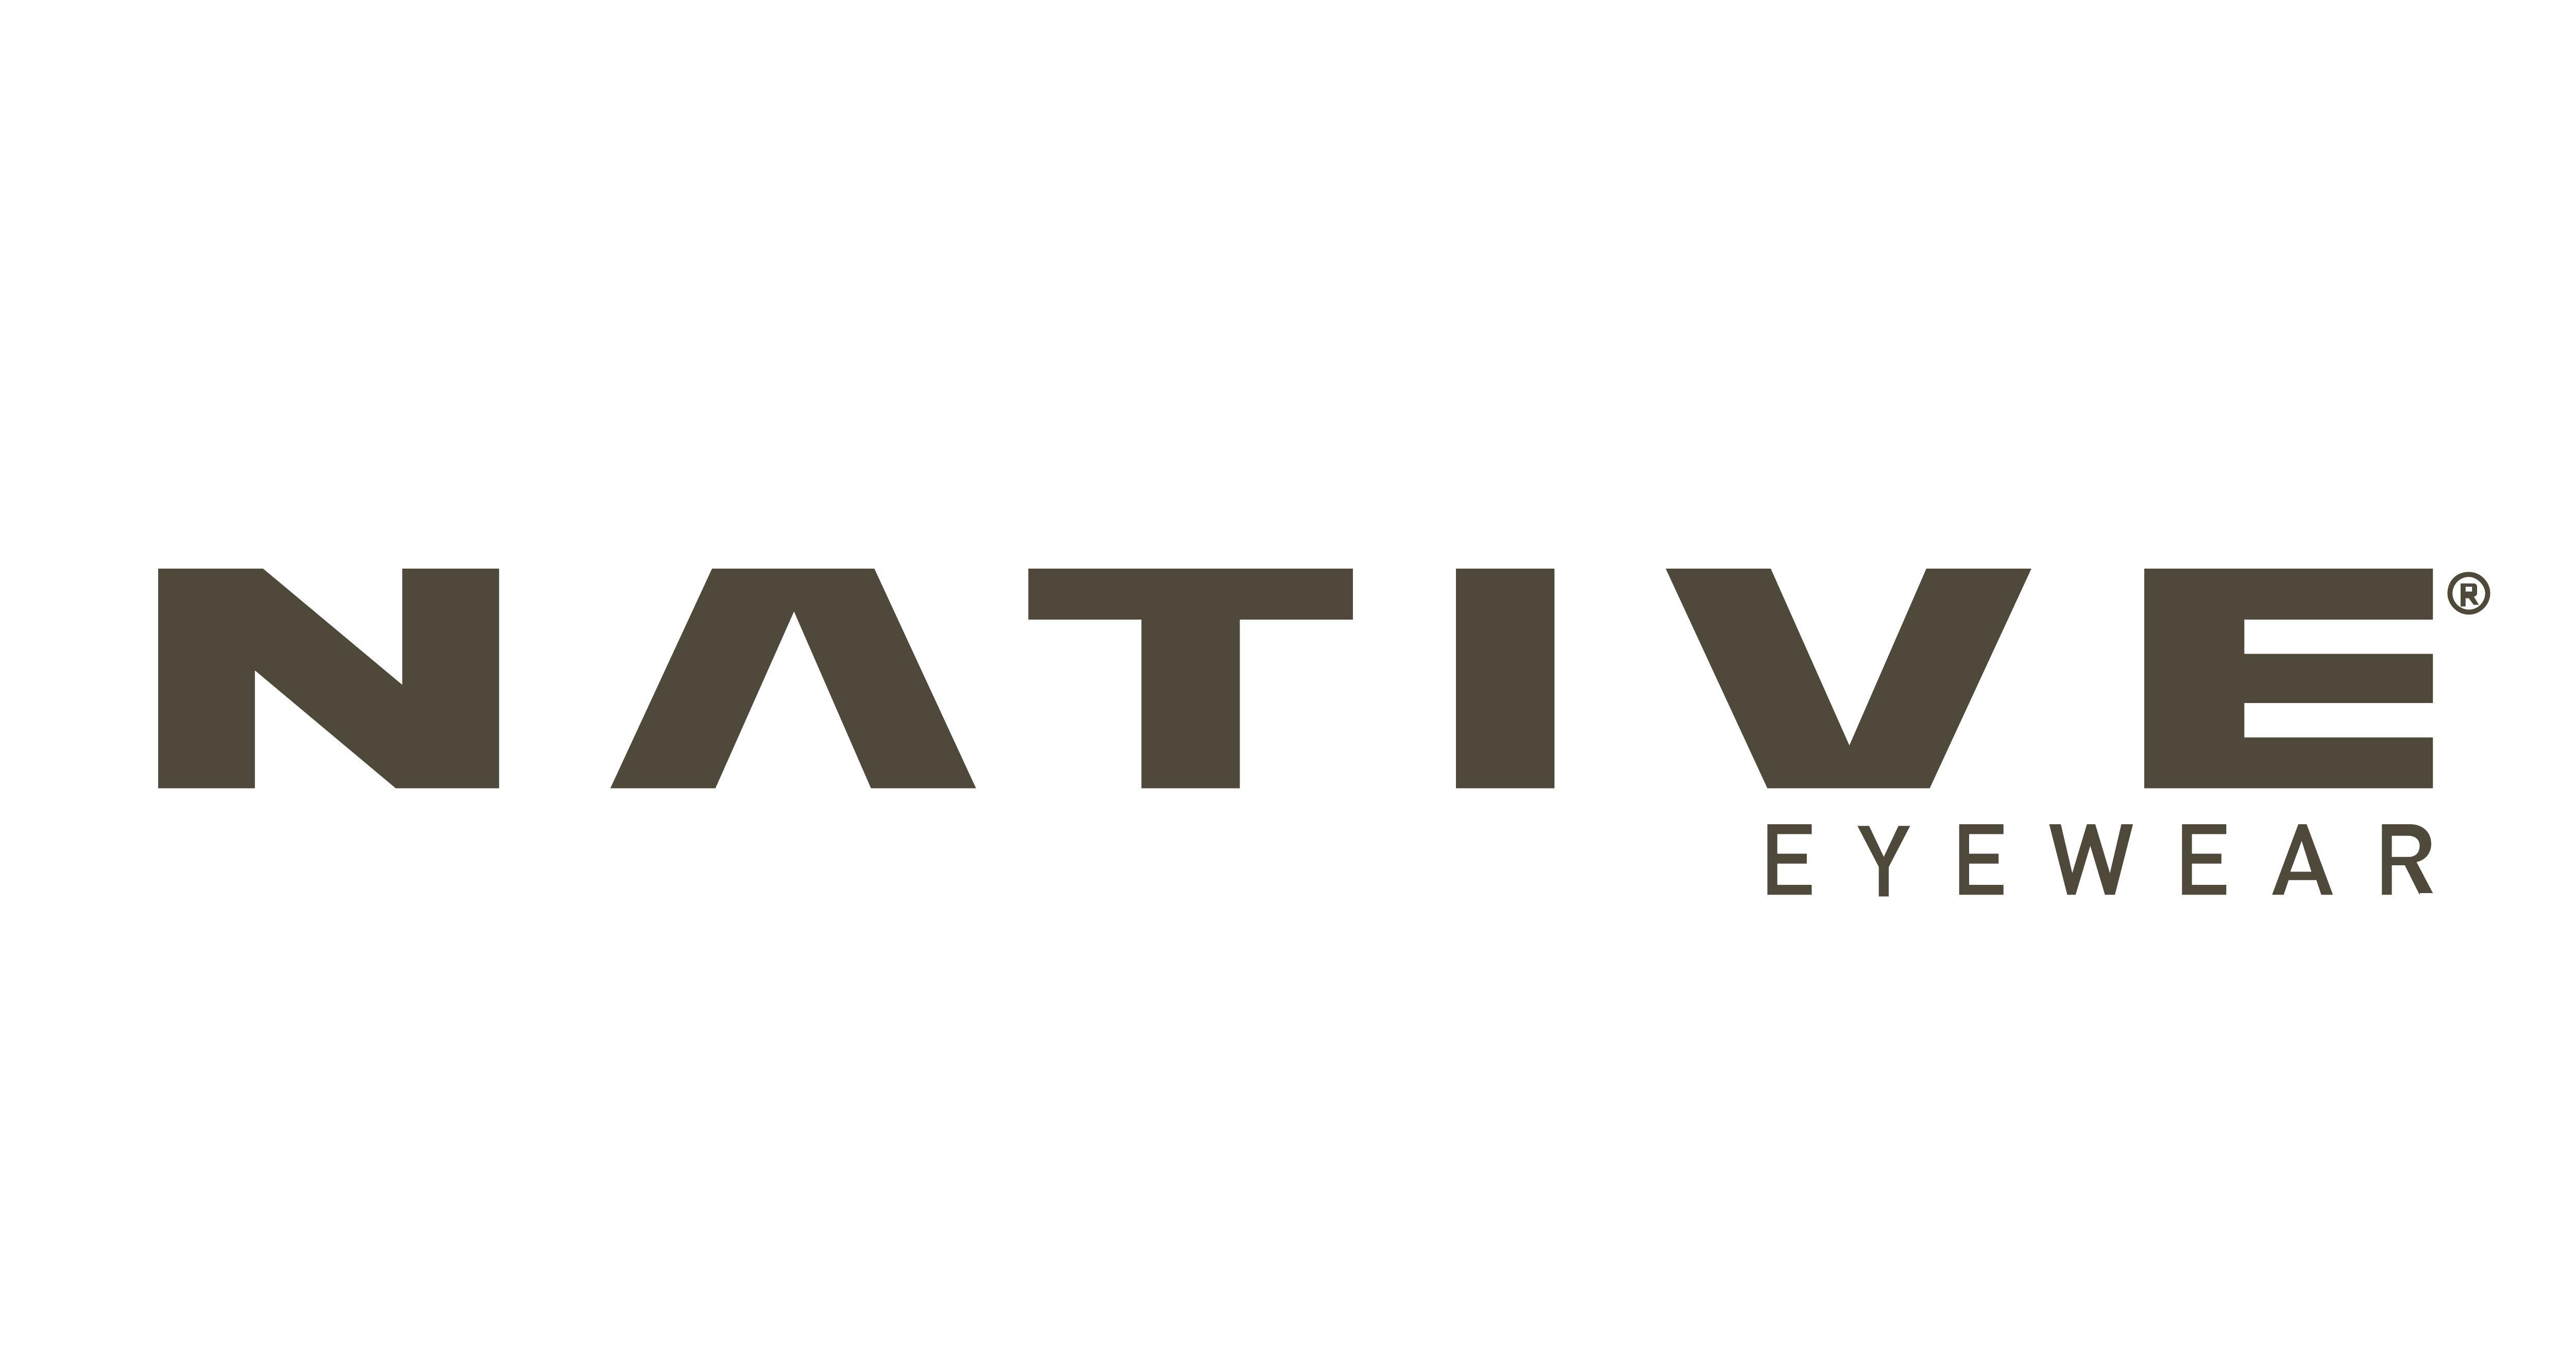 Eyewear Company Logo - Sports Sunglasses, Polarized Sunglasses, and Performance Eyewear for ...